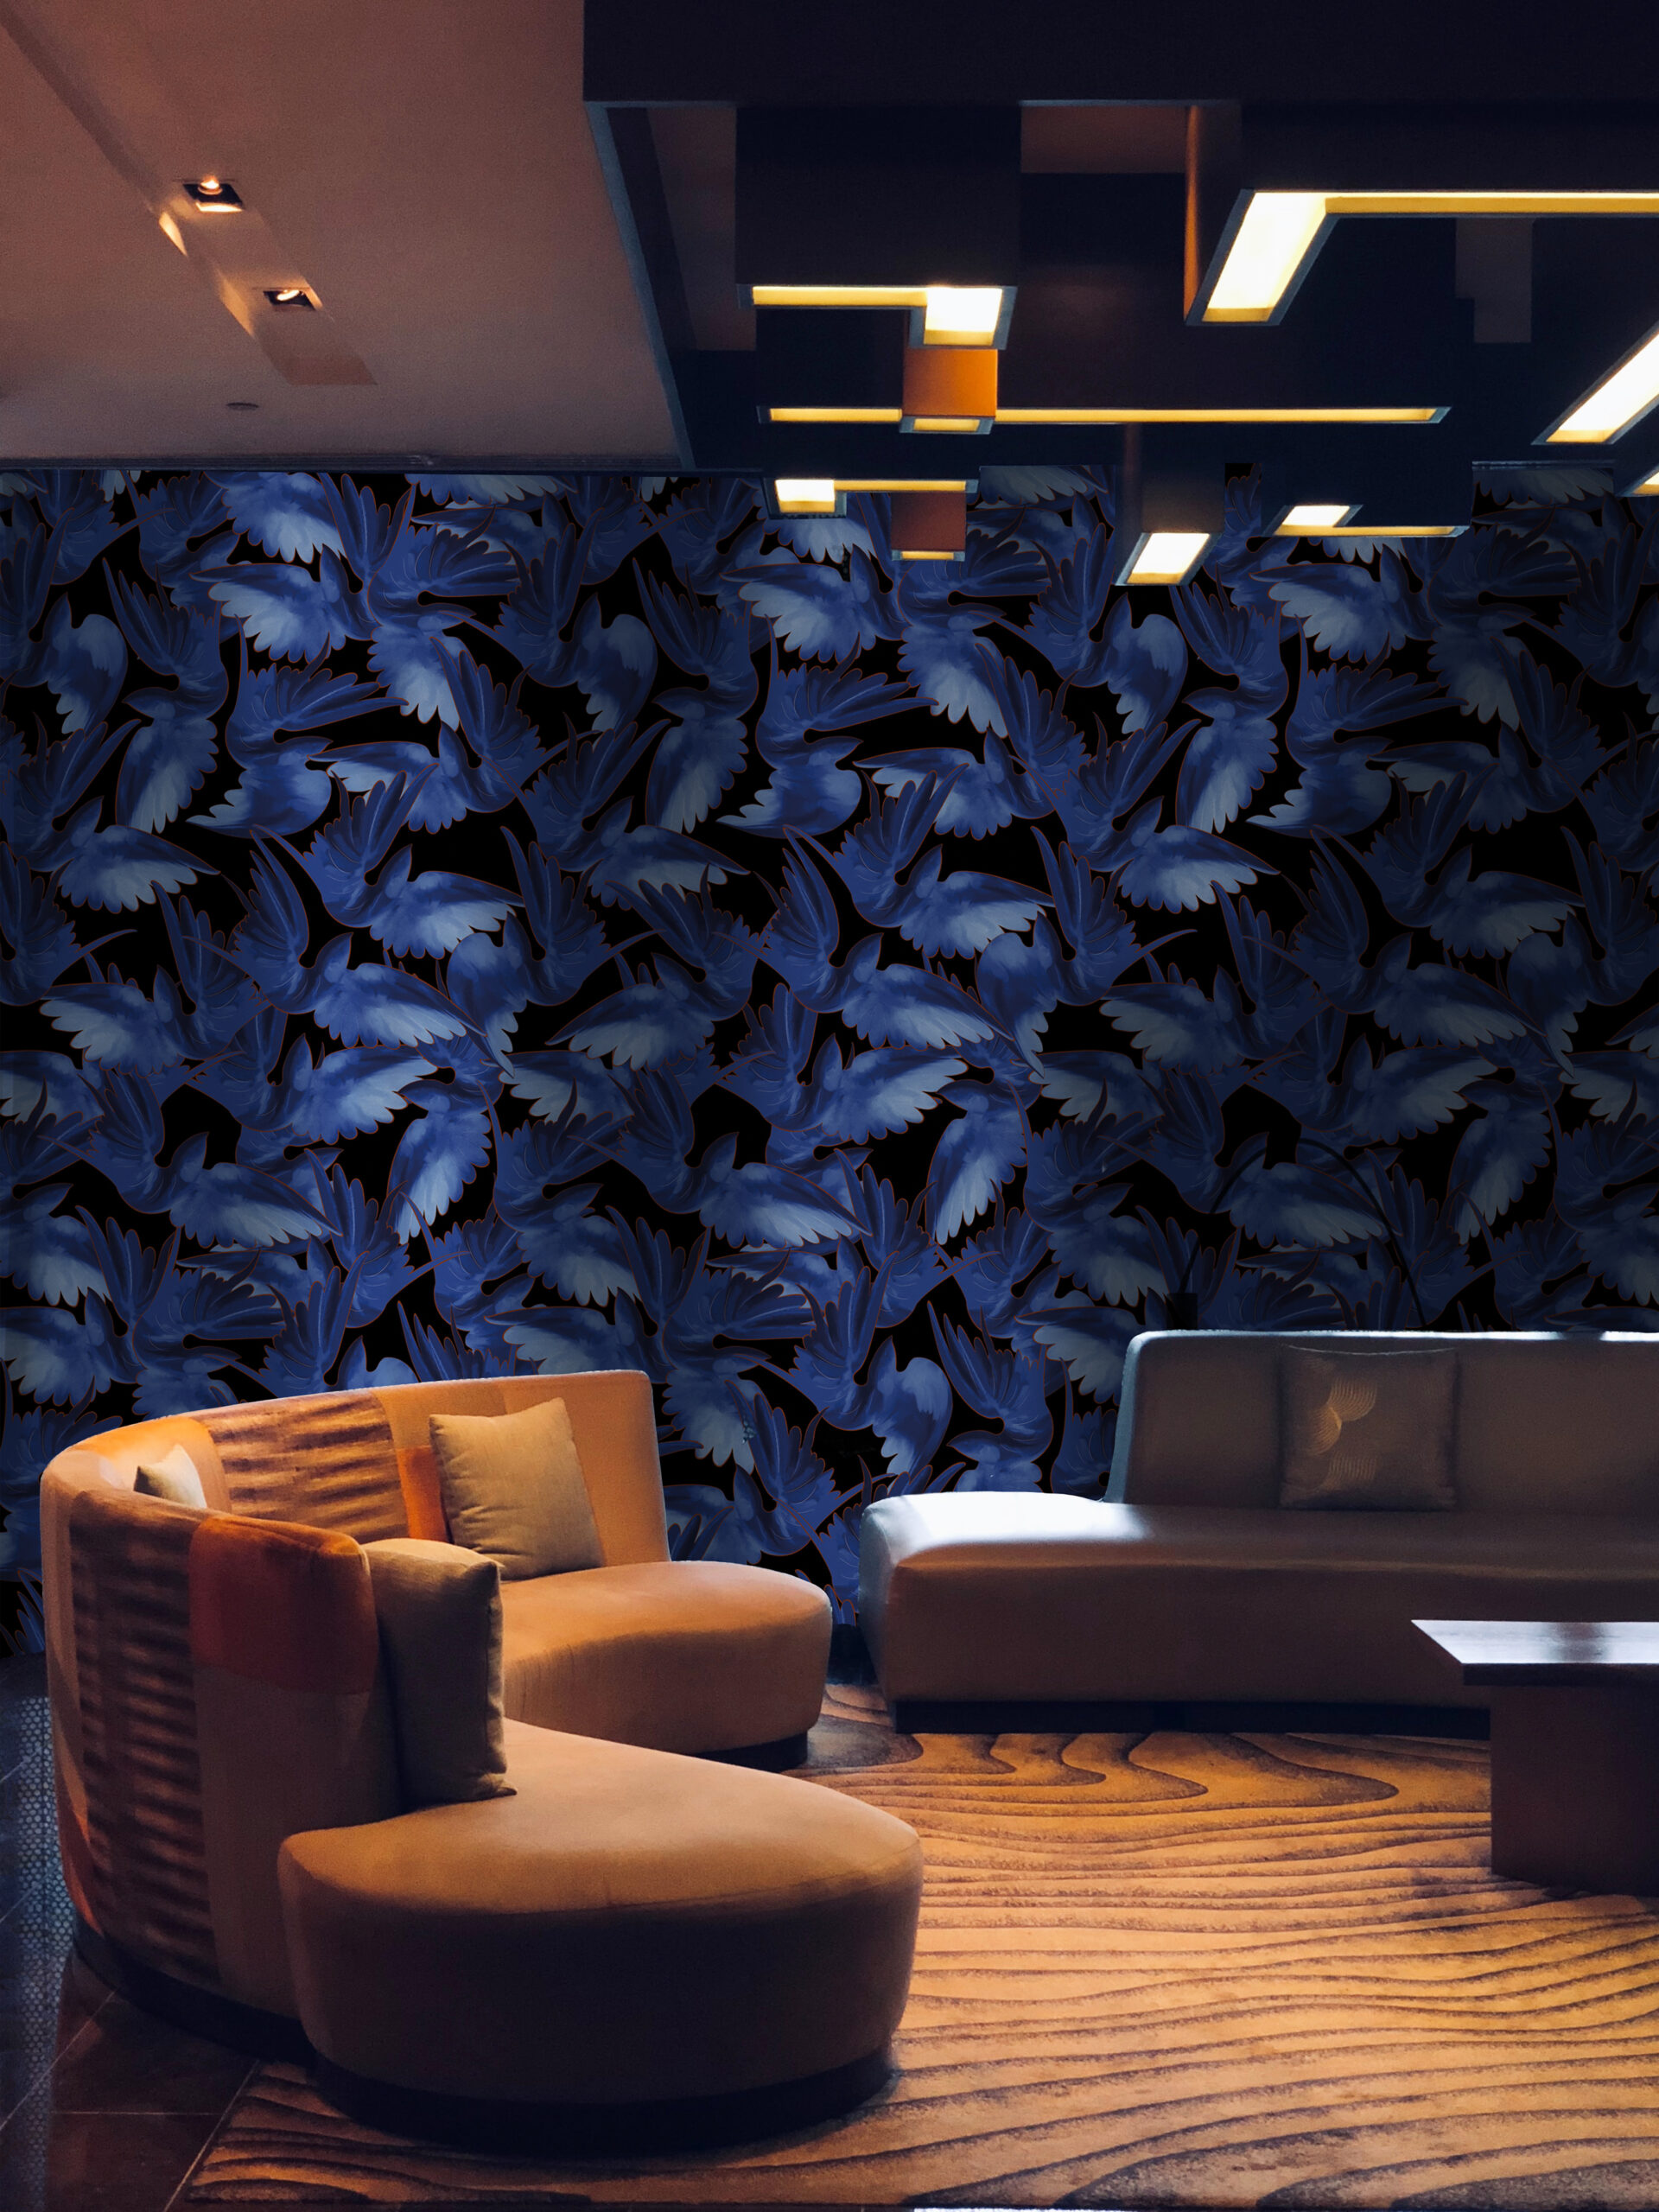 Misteriosa-MaVoix-wallpaper-by-Leonardo-Dini-pattern-Collezione-Racconti-Interior-Design